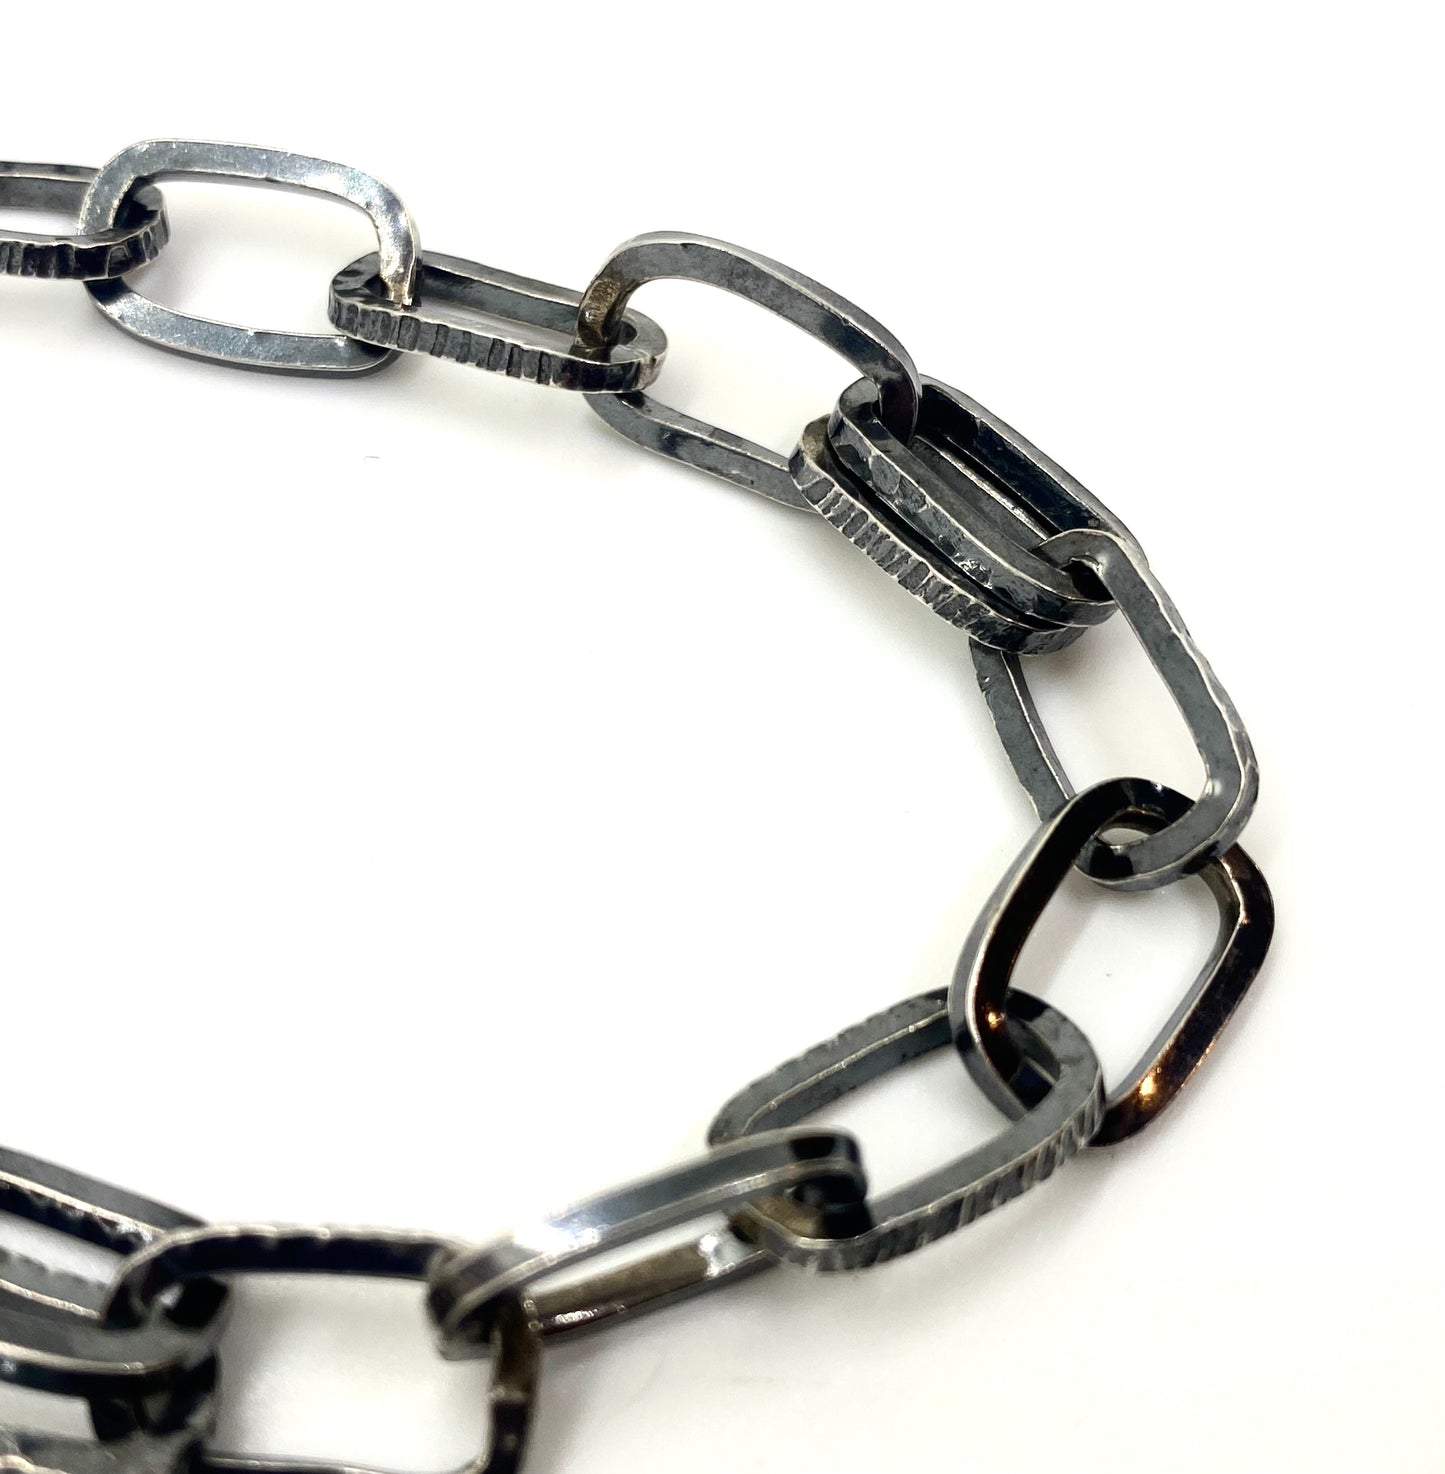 Handmade Chain medium, hammered links